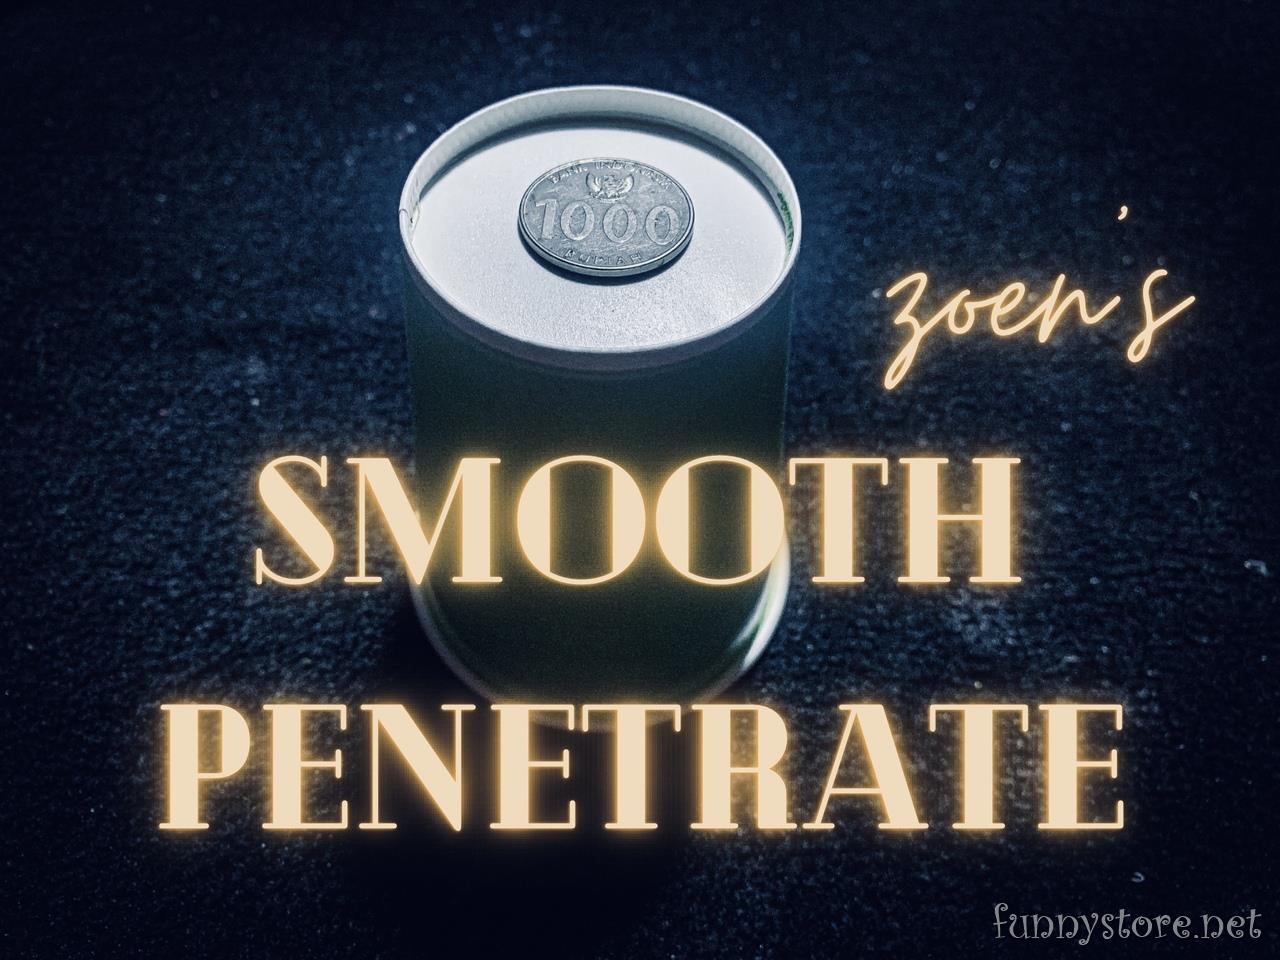 Zoen's - Smooth penetrate